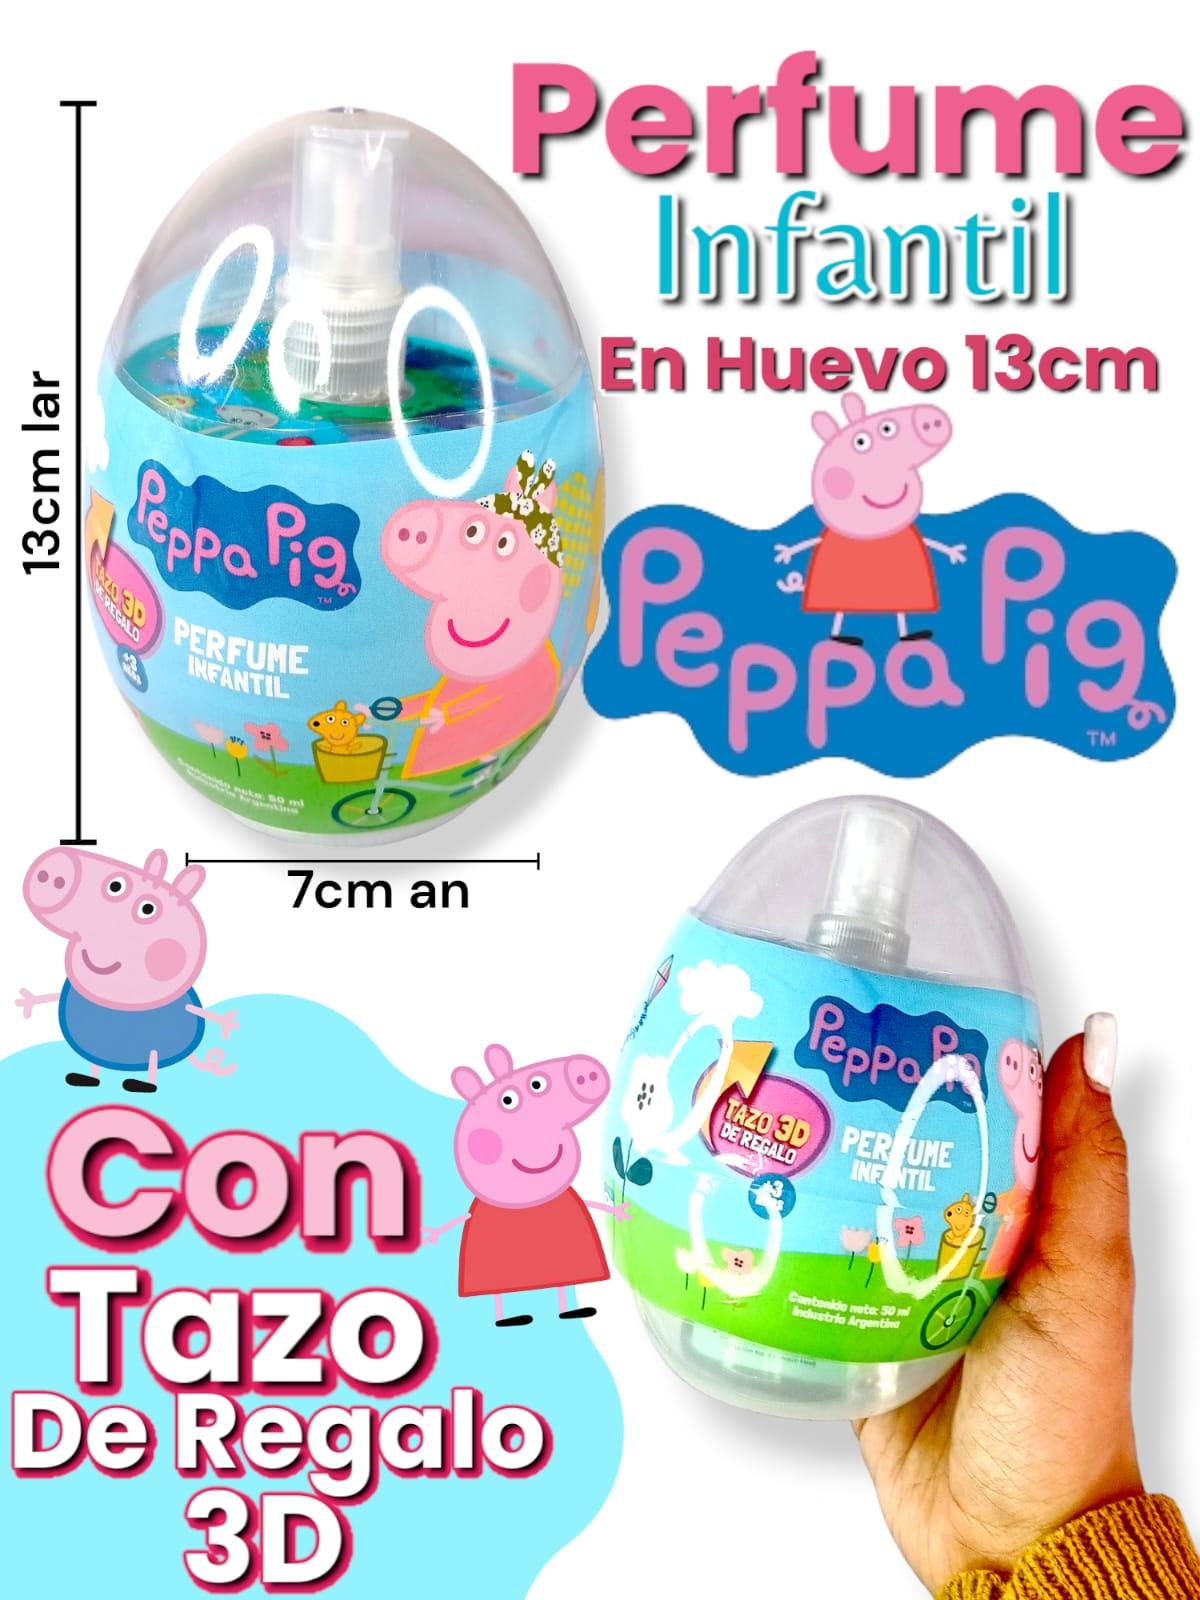 Perfume Infantil EN huevo PEPPA PIG 13cm